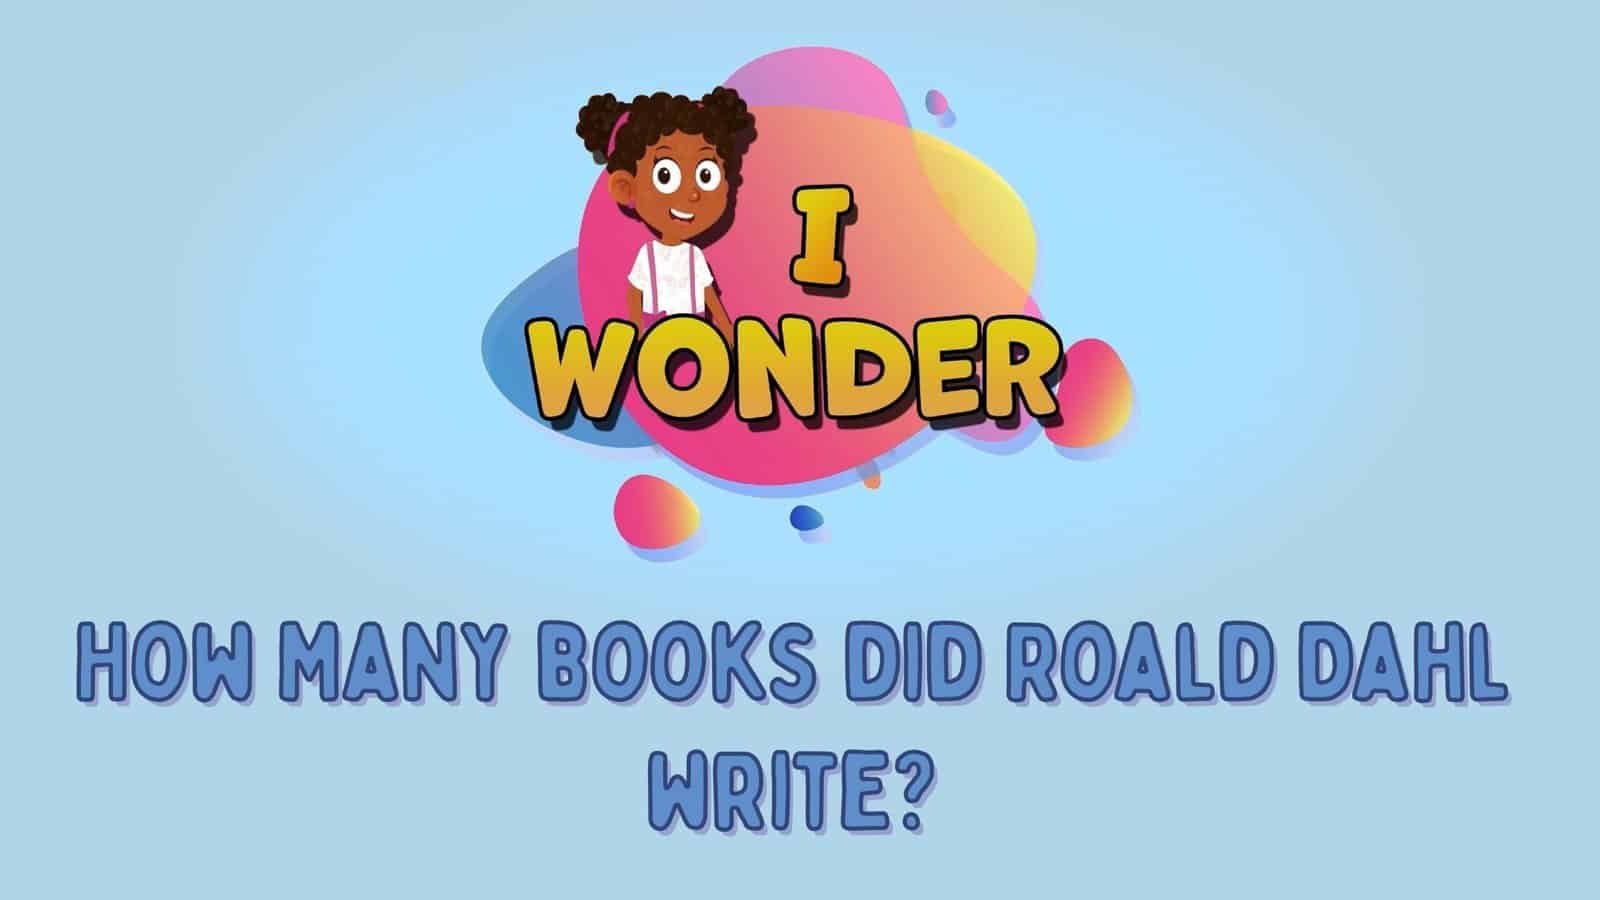 How Many Books Did Roald Dahl Write?